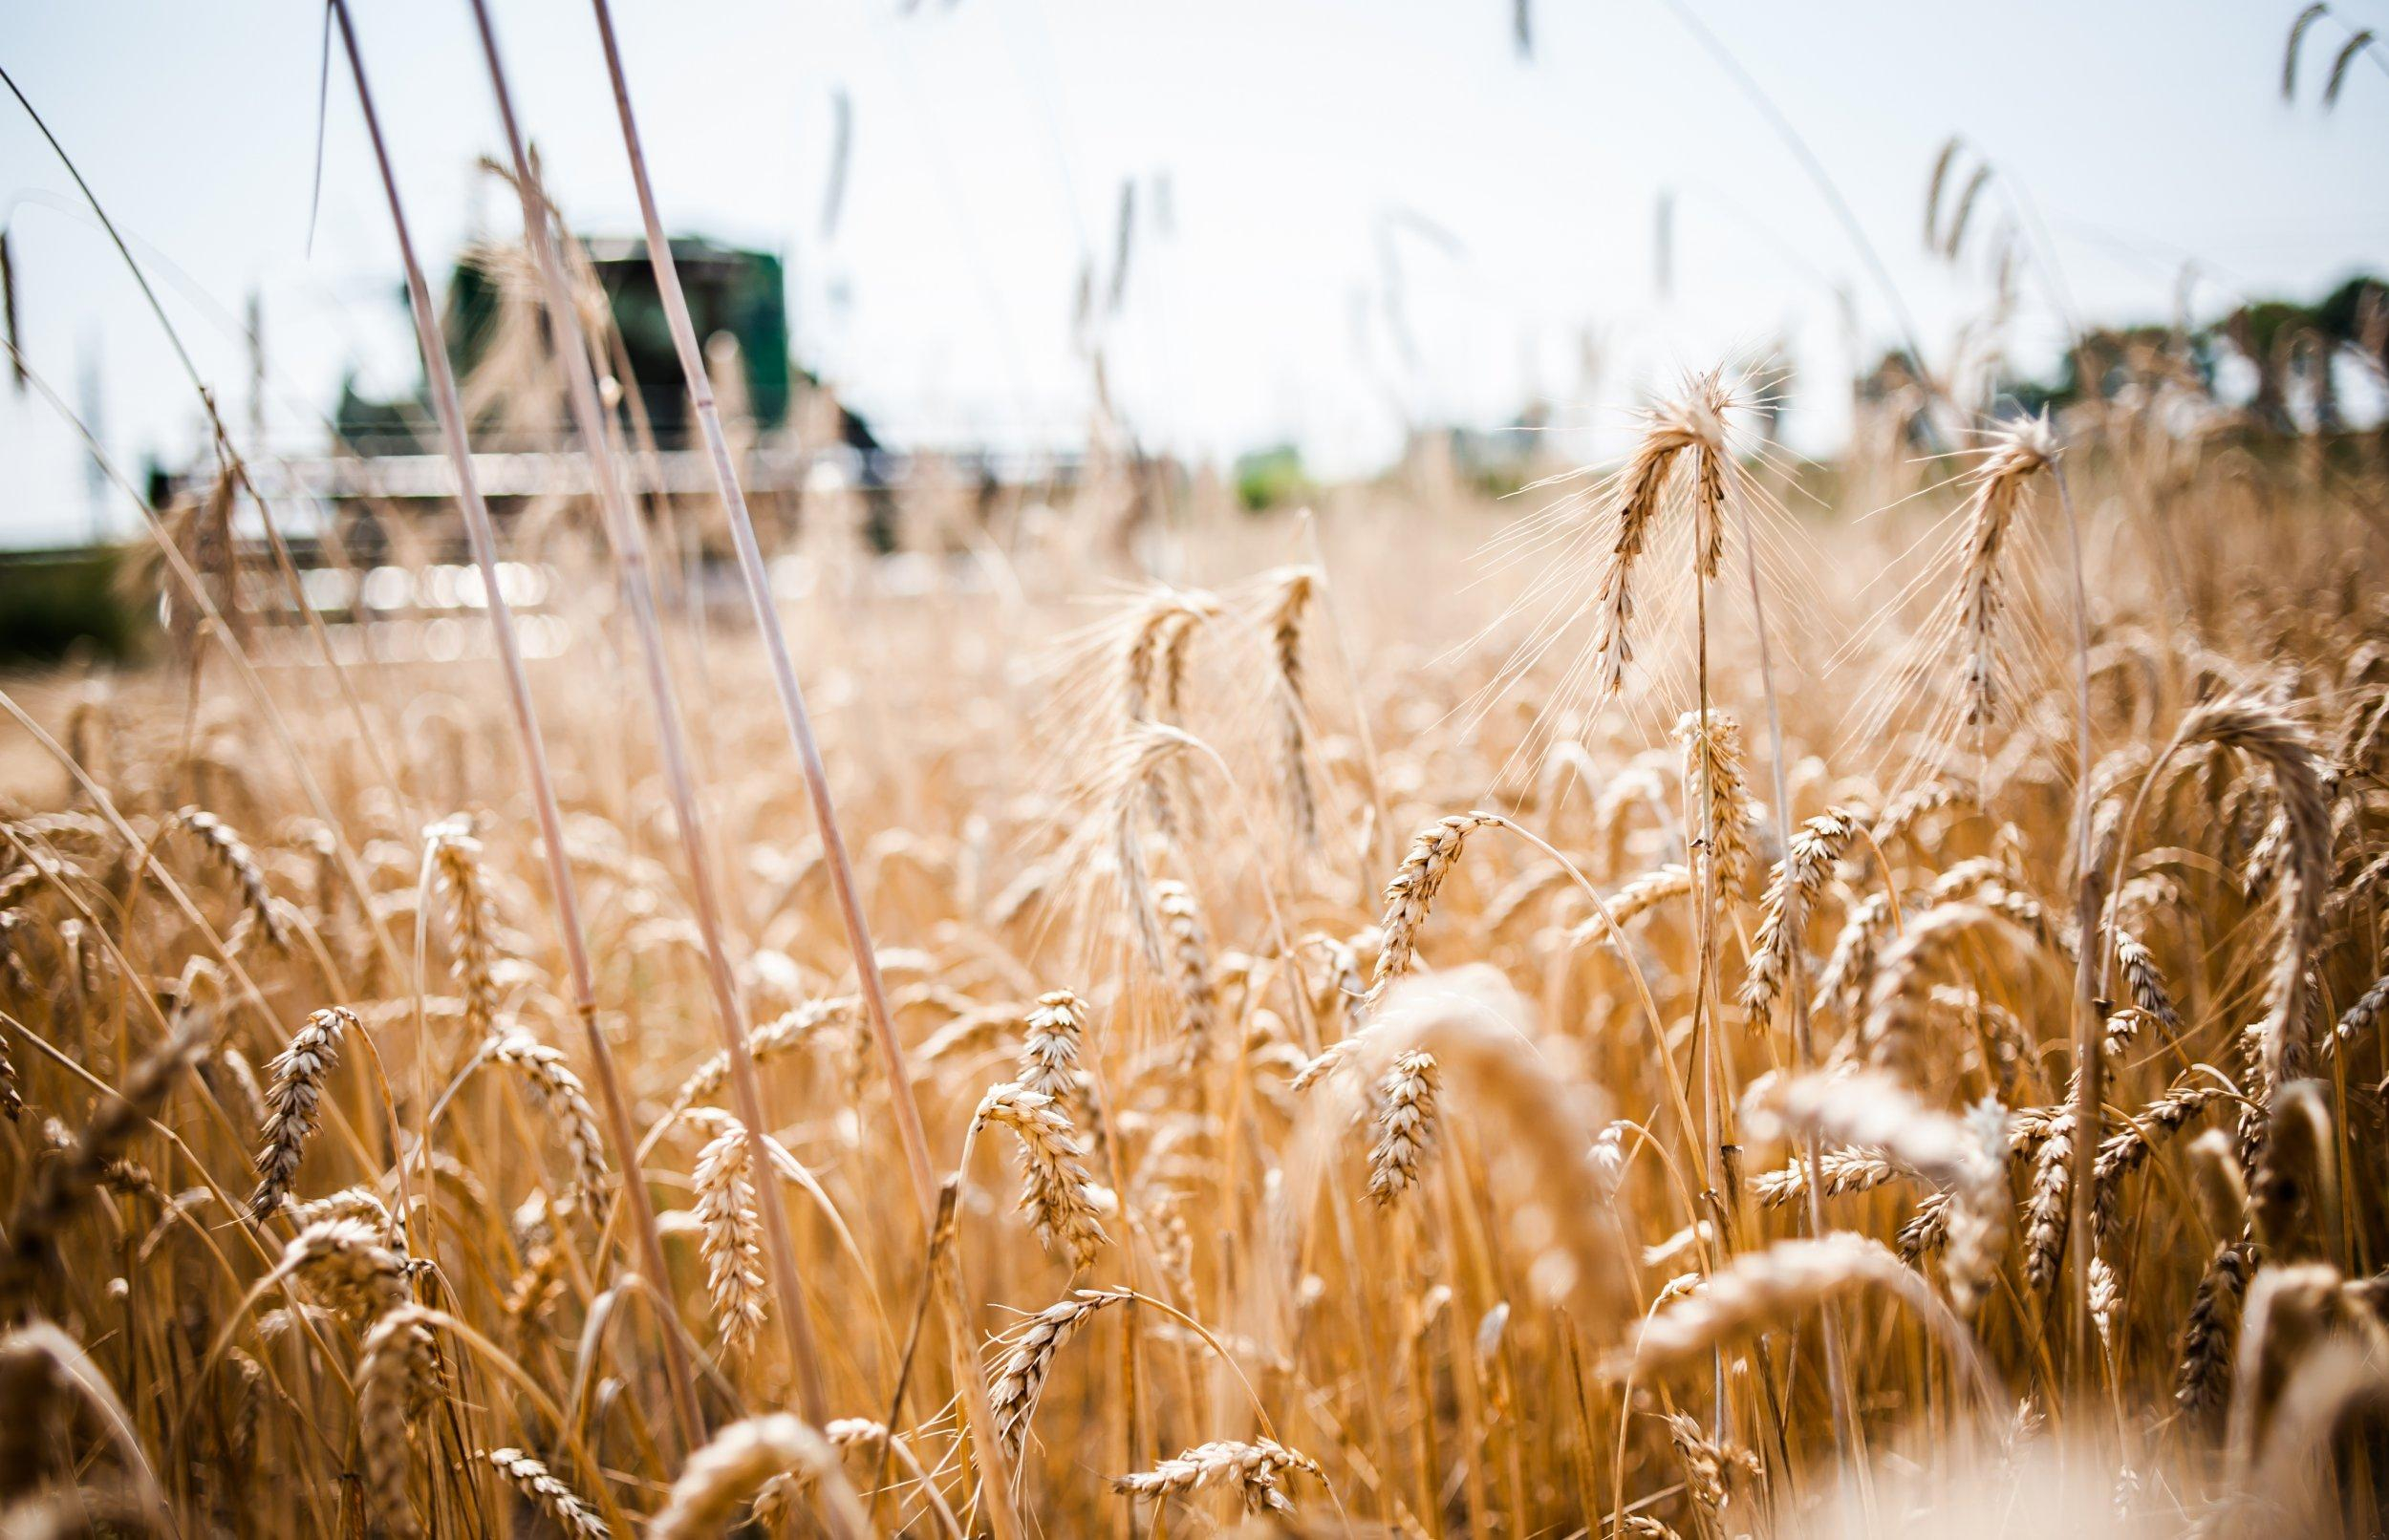 Збільшити вивезення зерна до 2,5 тонн: з якою країною Україна посилює співпрацю щодо експорту